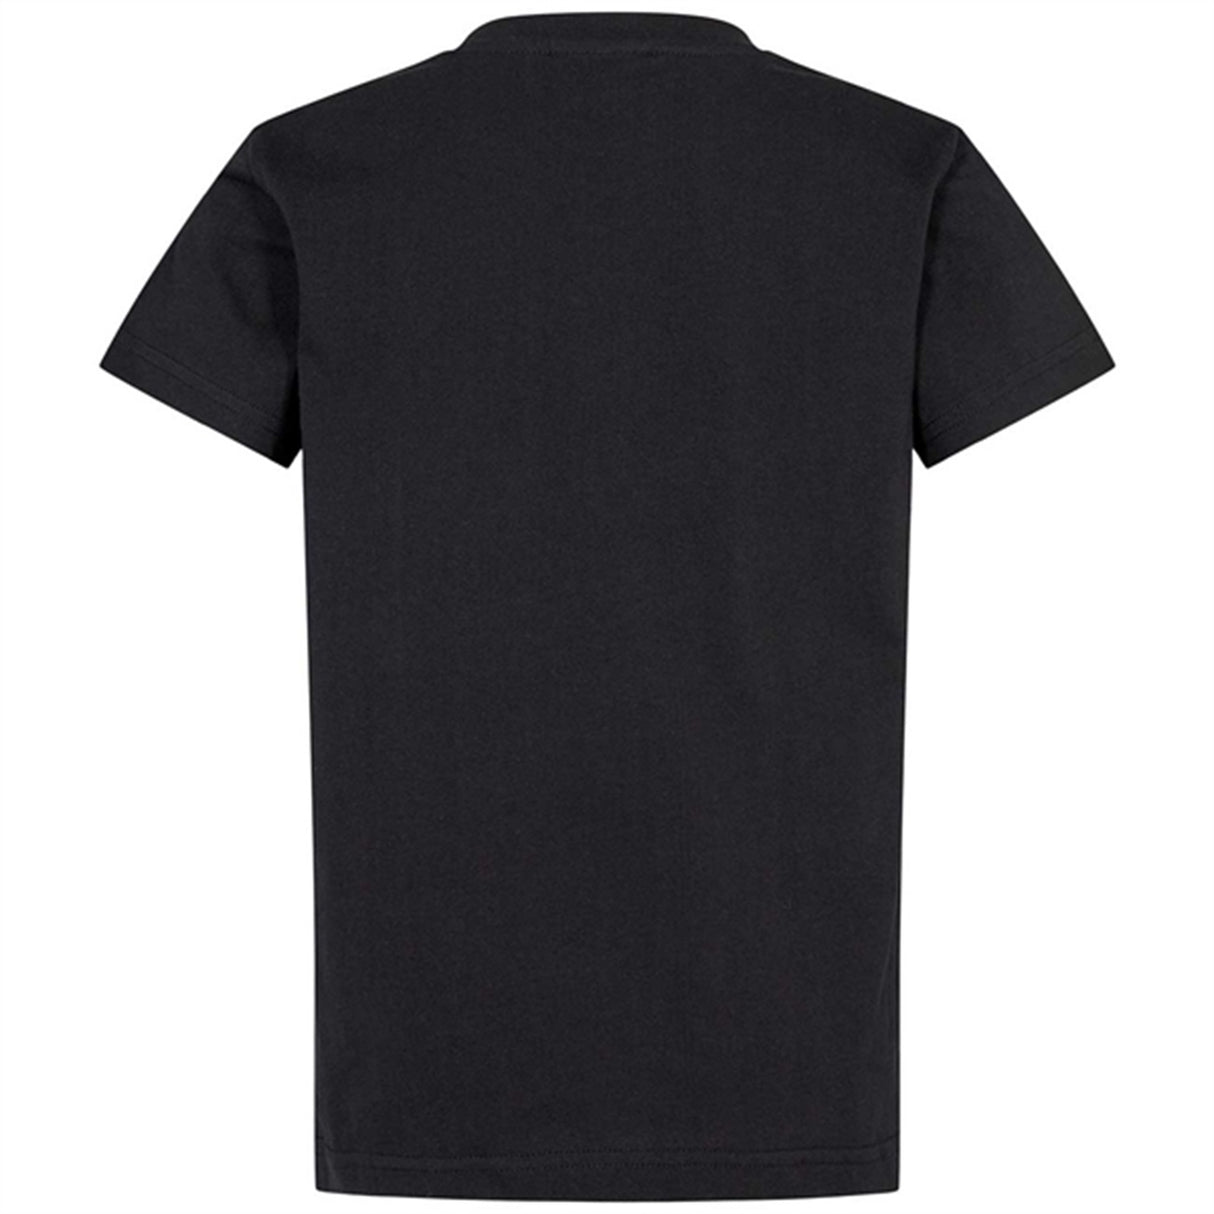 Sofie Schnoor Black T-shirt 2